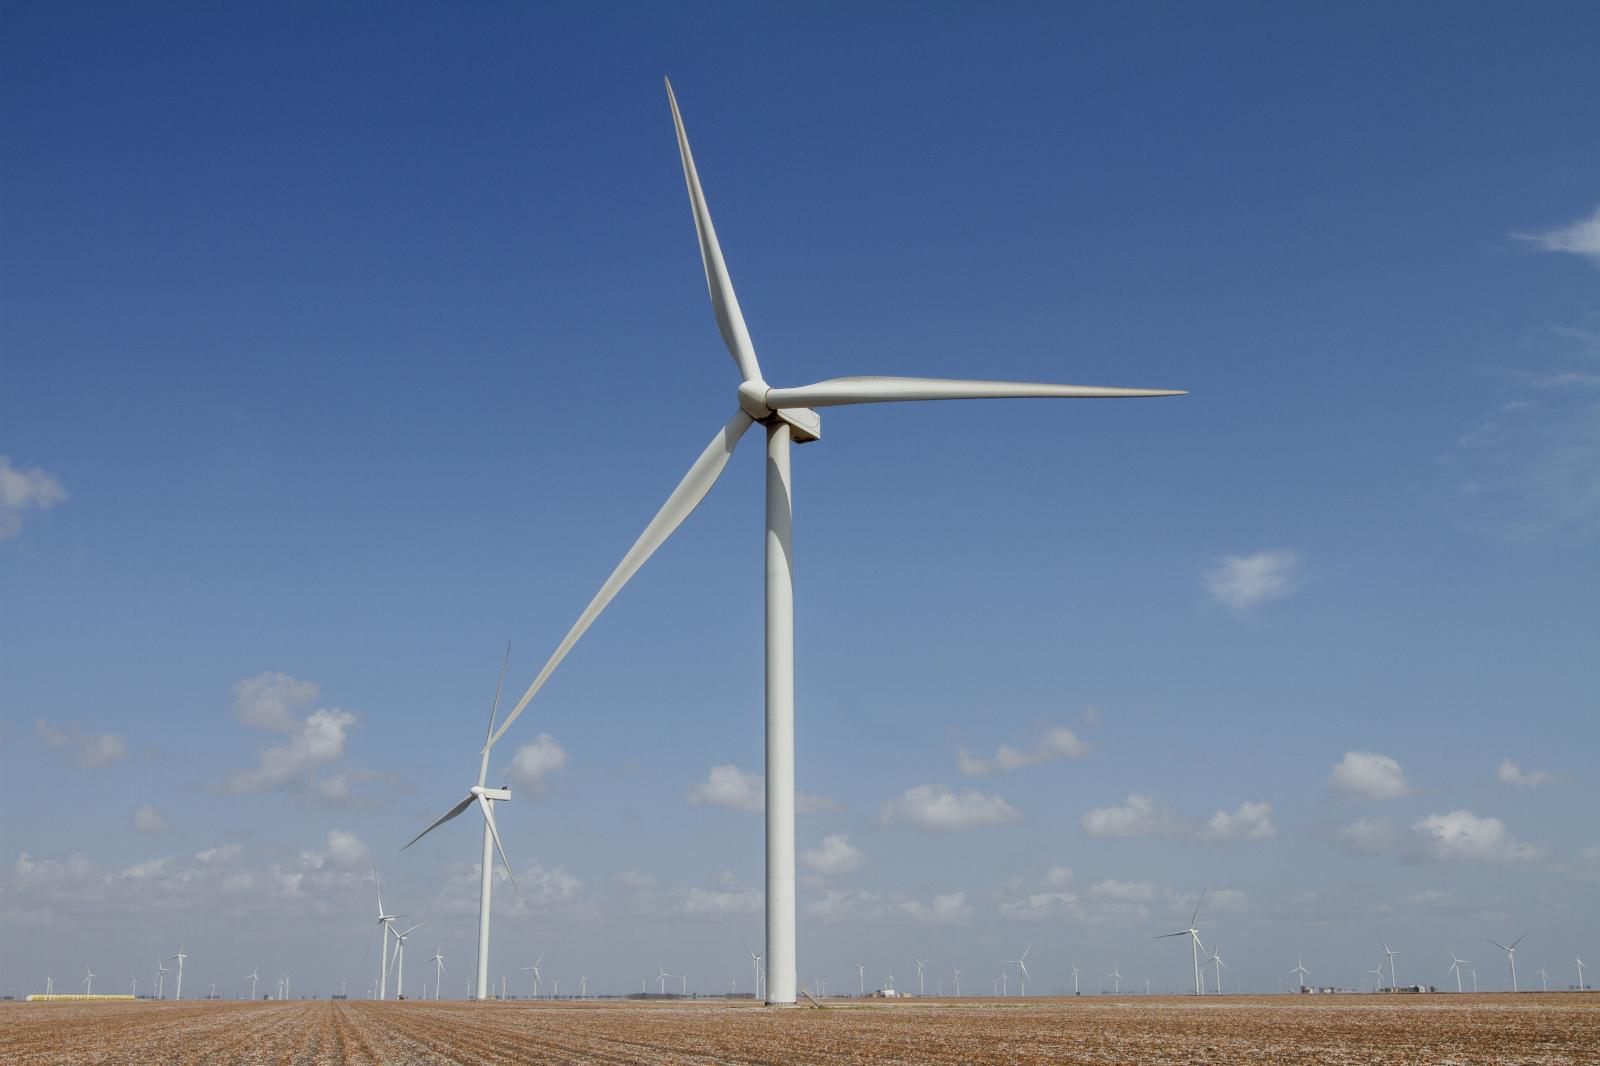 Coastal South Texas Wind Turbines